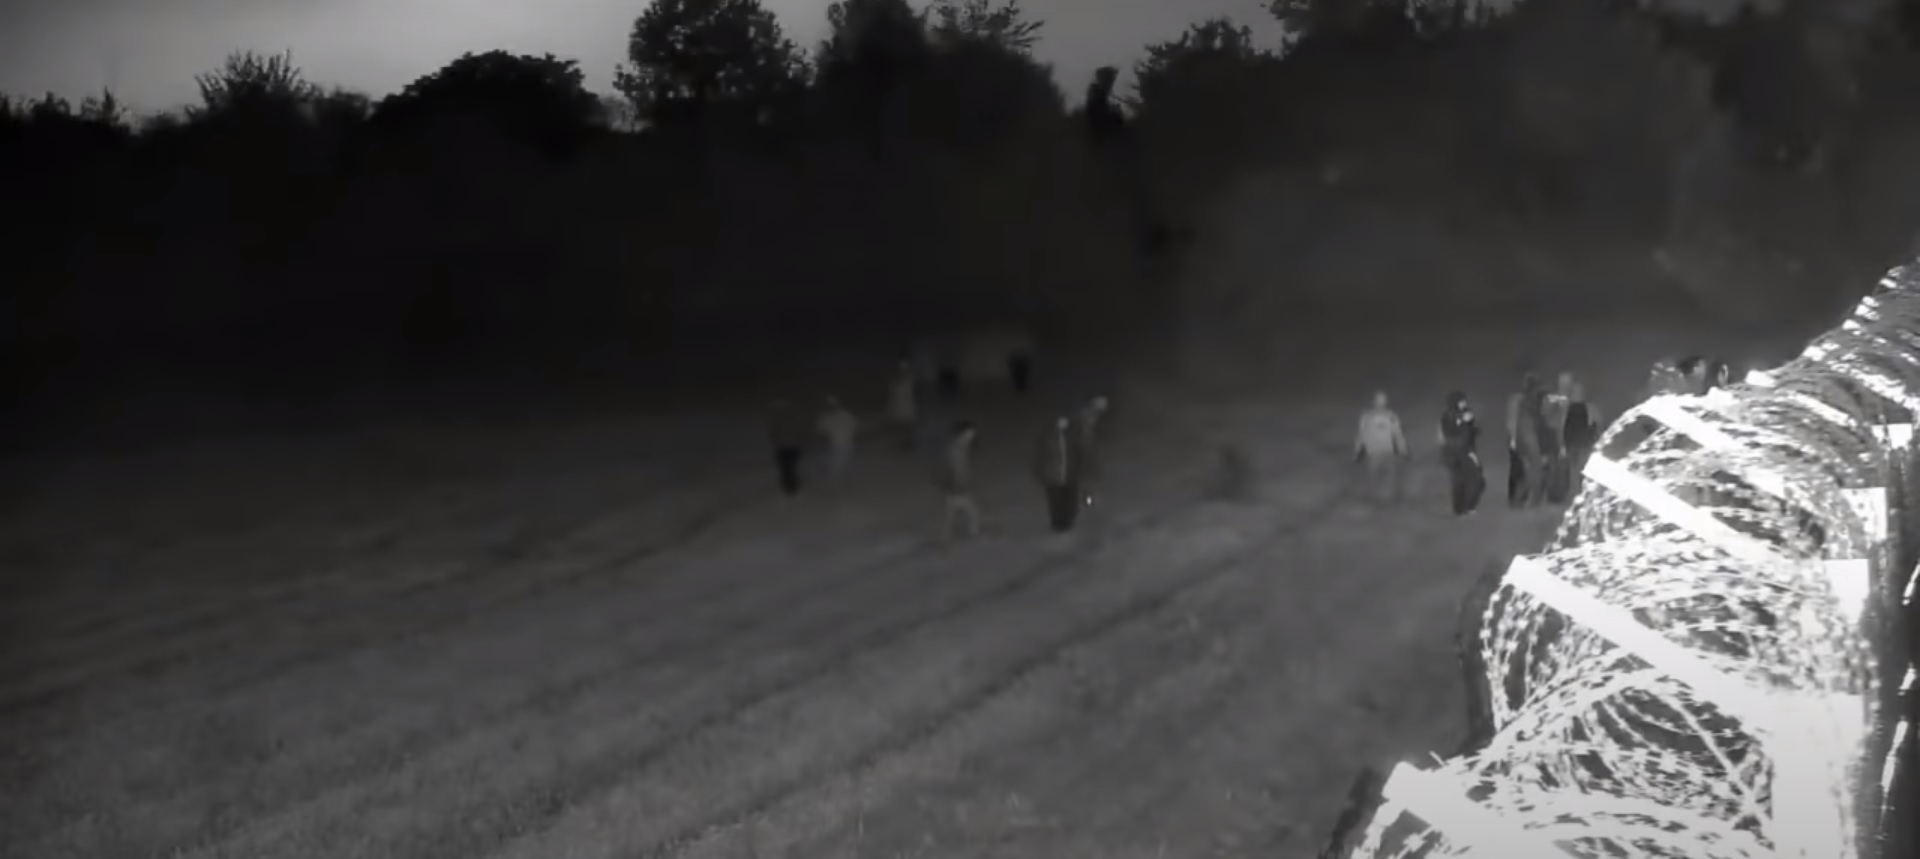 Többtucatnyi migráns támadta meg a magyar határt